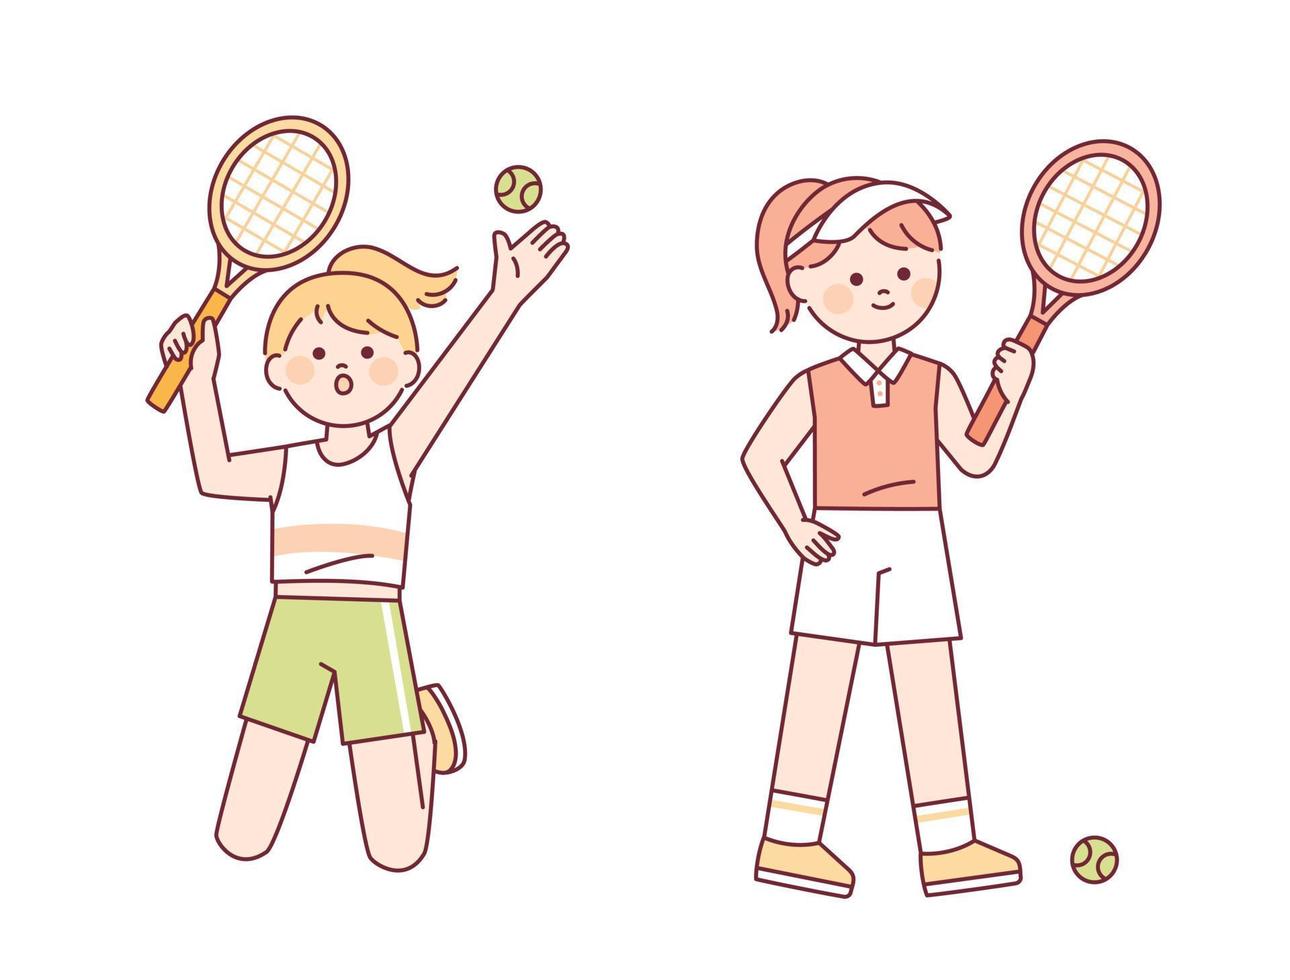 ragazze carine stanno giocando a tennis. una ragazza con un servizio da tennis e una ragazza con una racchetta da tennis. vettore